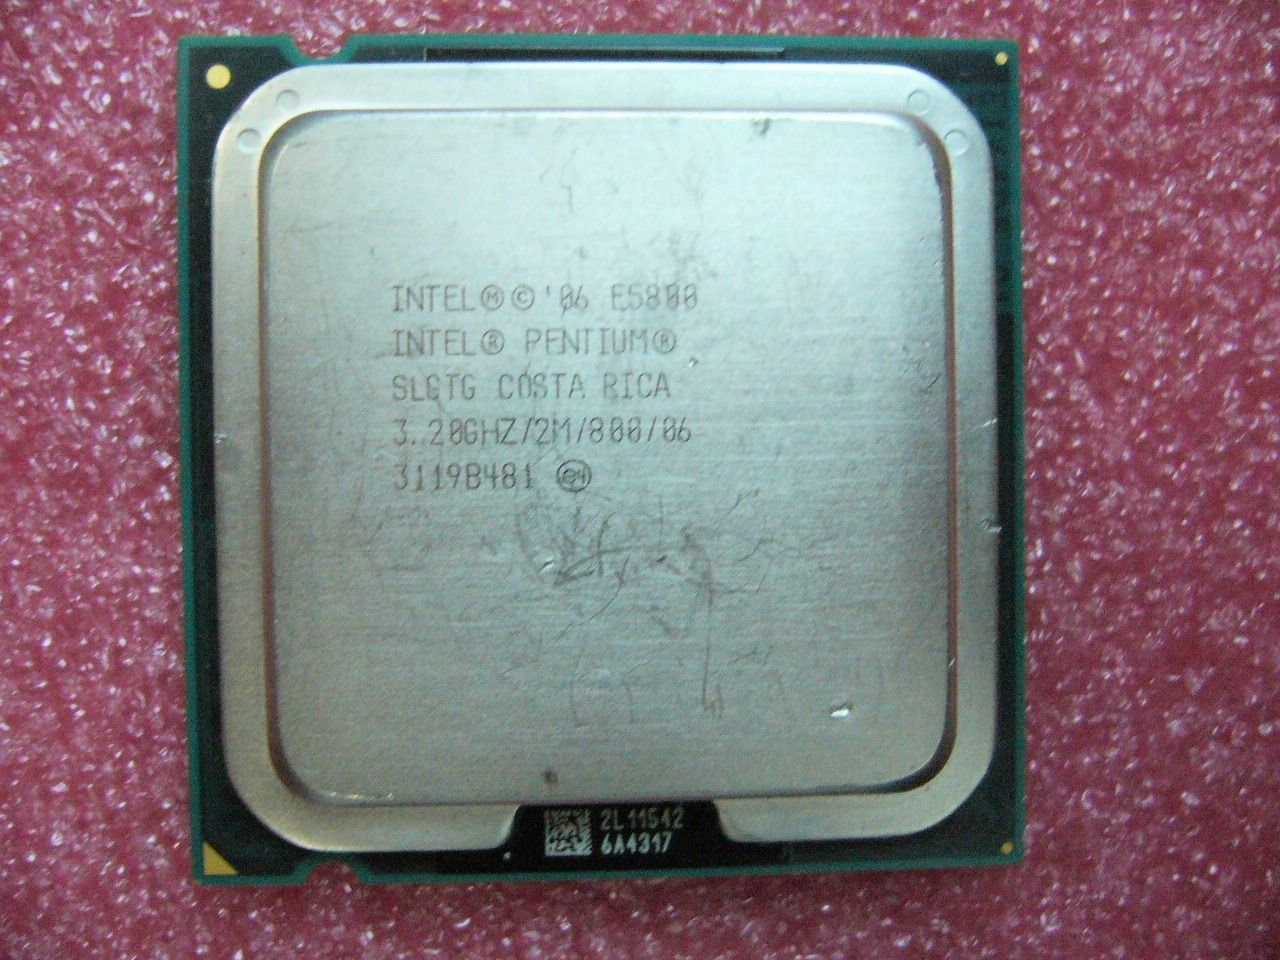 QTY 1x INTEL Pentium Dual Core E5800 CPU 3.2GHz 2MB/800Mhz LGA775 SLGTG